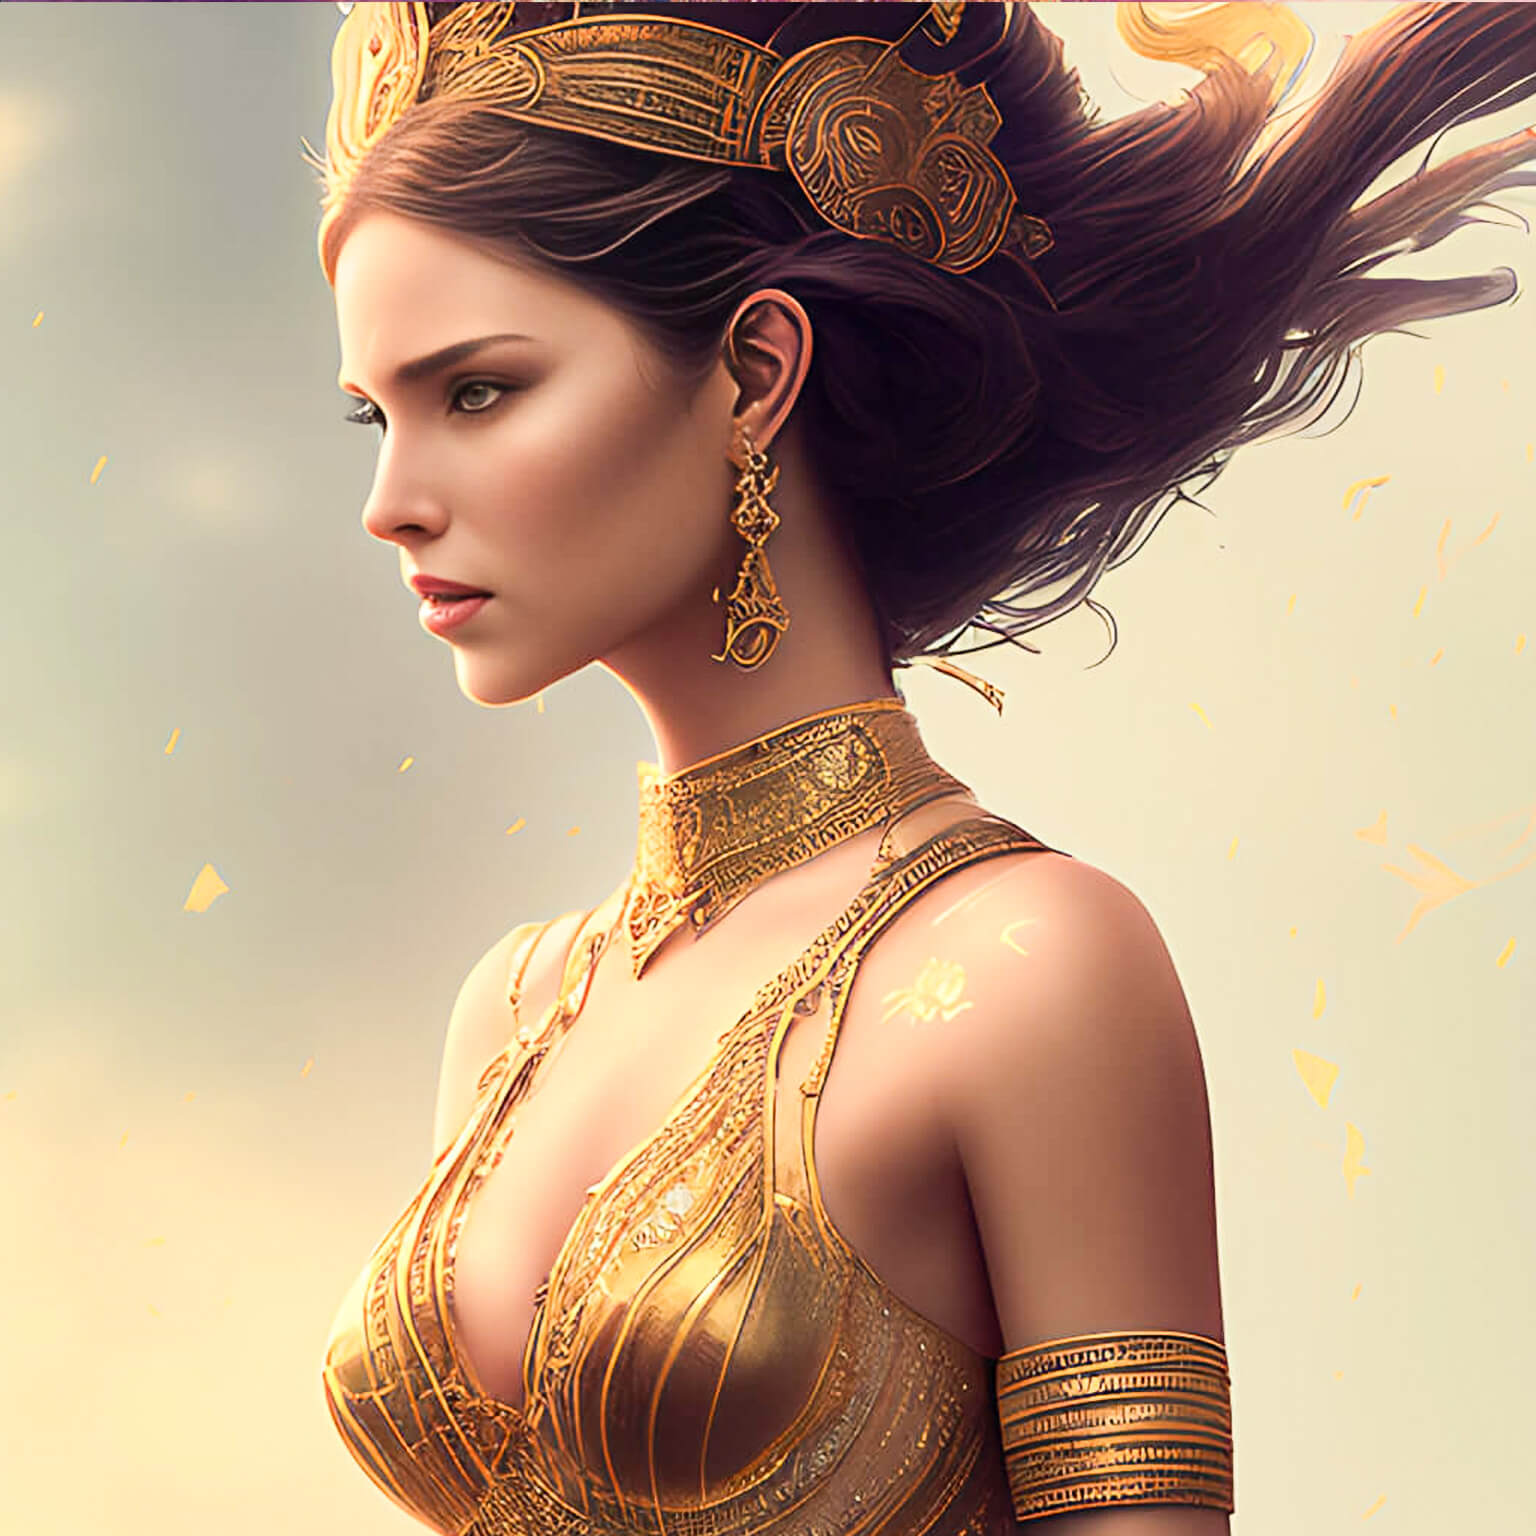 Ein KI Bild von einer Krieger Prinzessin in goldener Rüstung